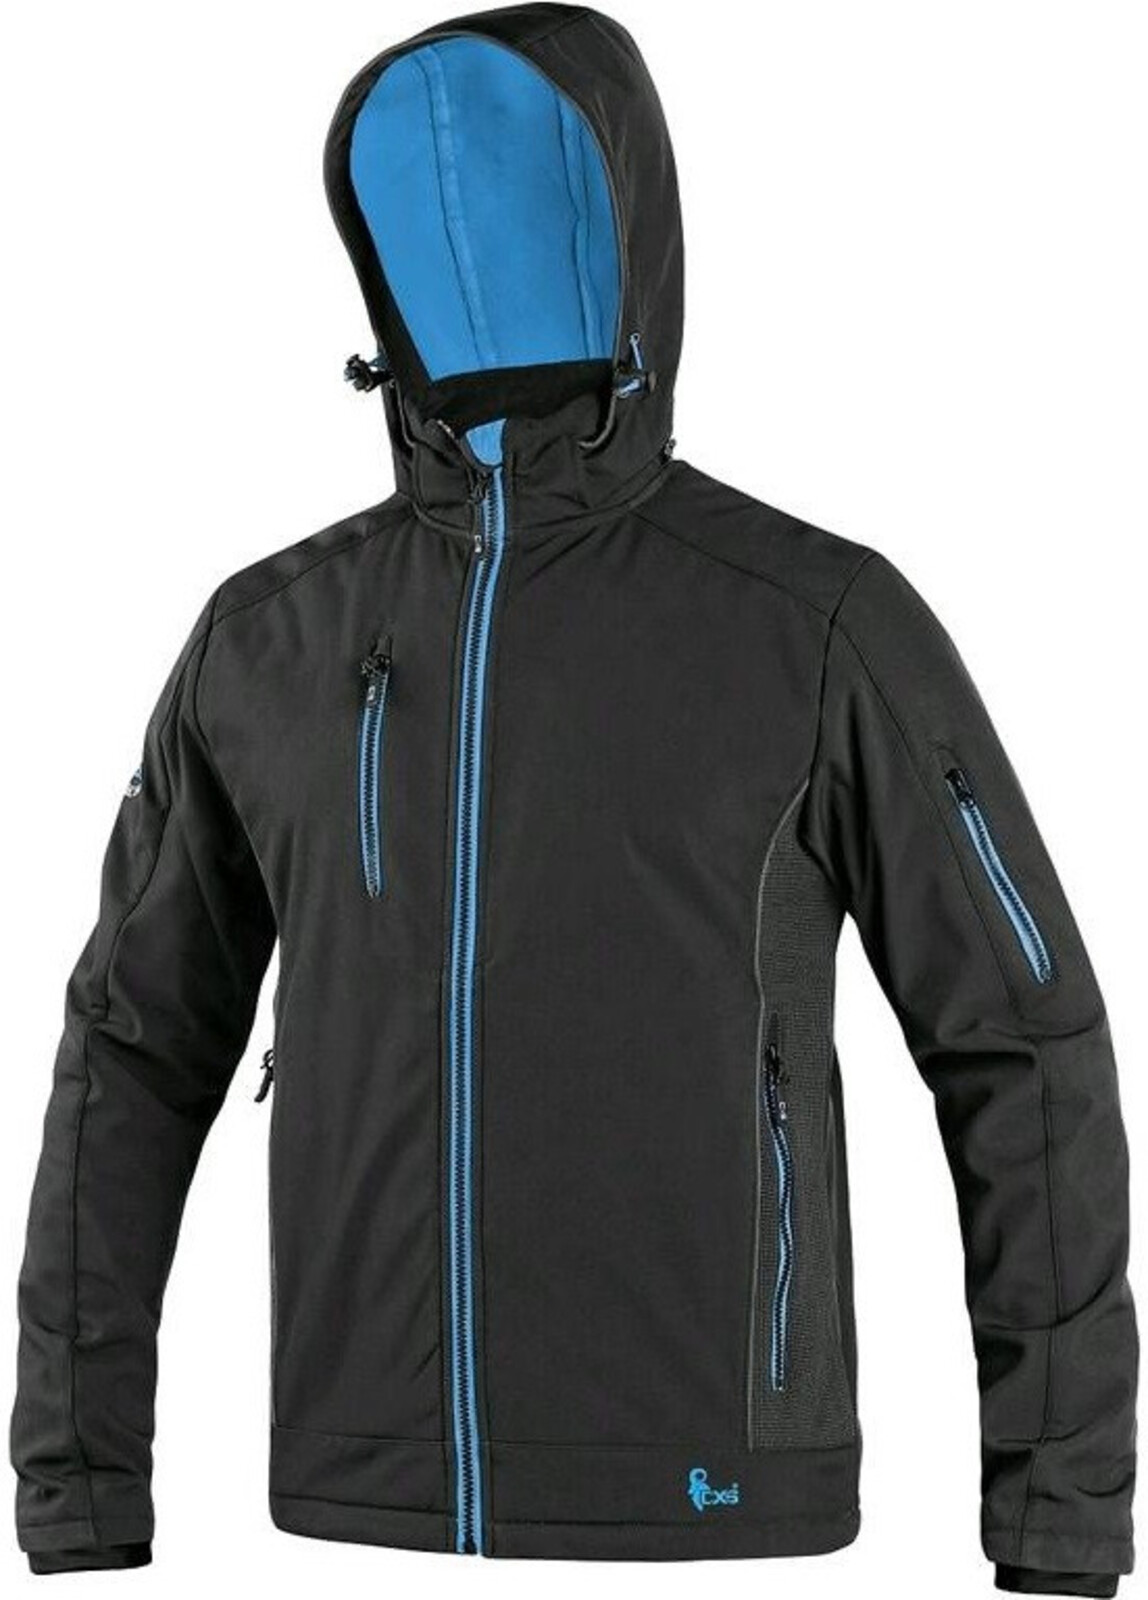 Pánska softshellová bunda CXS Durham - veľkosť: S, farba: čierna/modrá